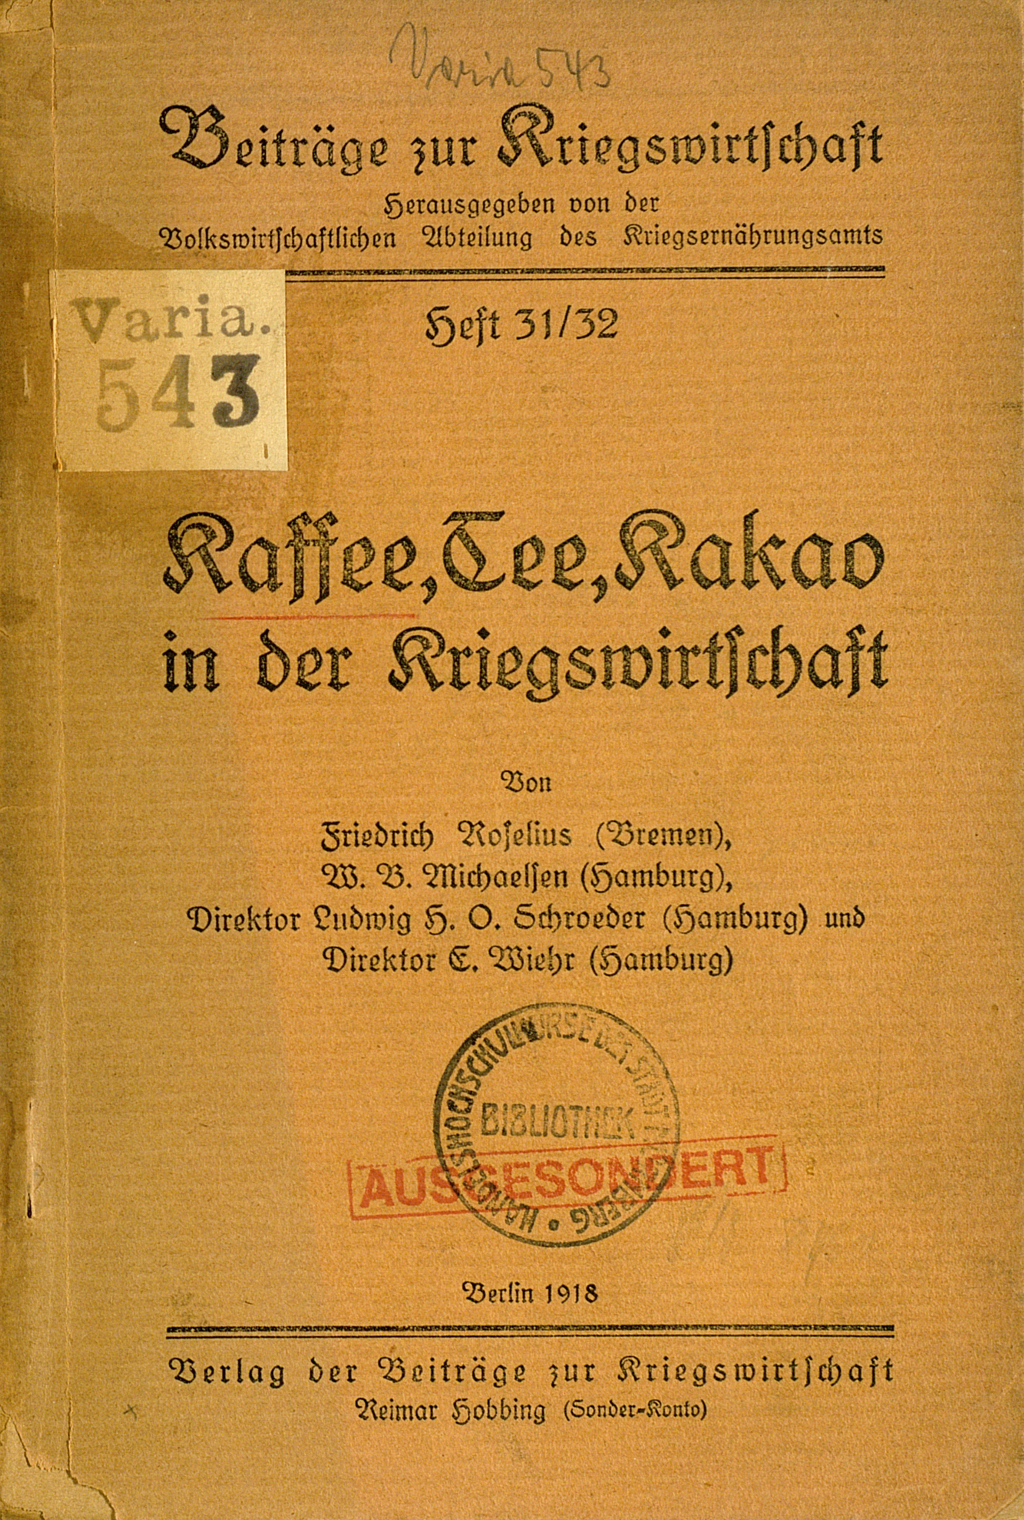 Zu sehen ist der Einband der Druckschrift: Roselius, Friedrich, u.a.: Kaffee, Tee, Kakao in der Kriegswirtschaft 1918. Berlin: Hobbing, 1918.